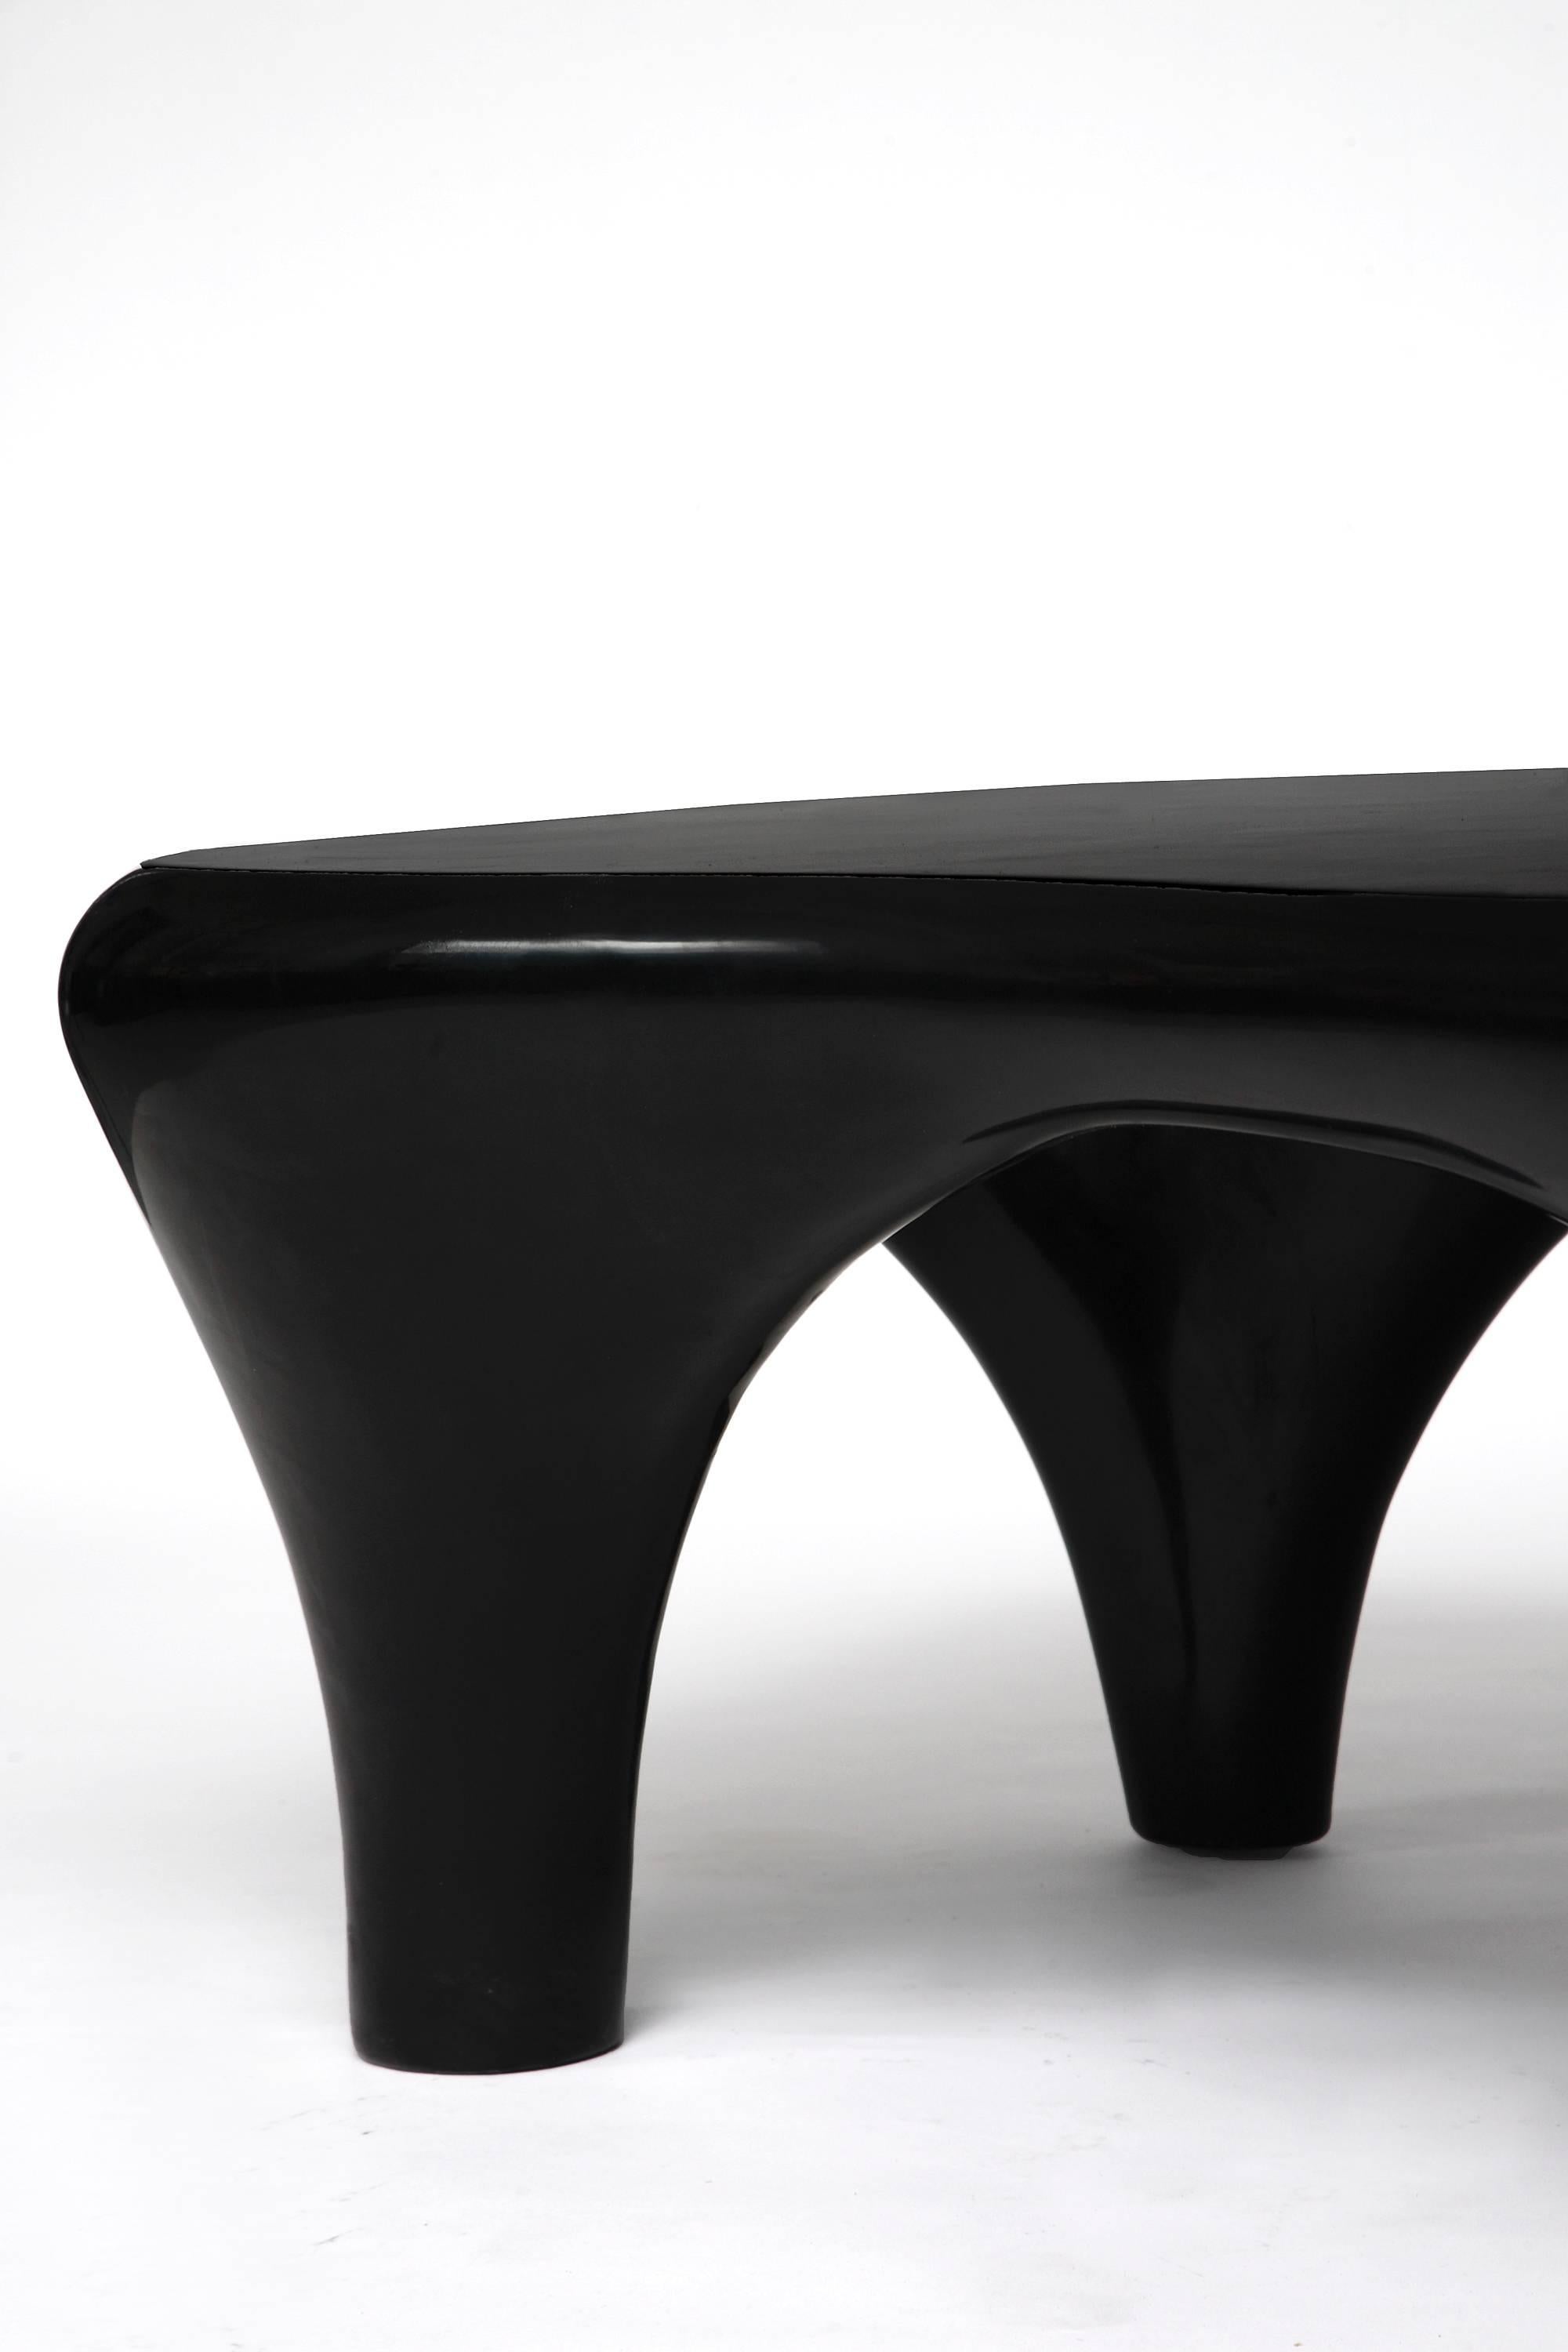 Laqué Table basse sculpturale laquée à la main par Jacques Jarrige, 2015 en vente